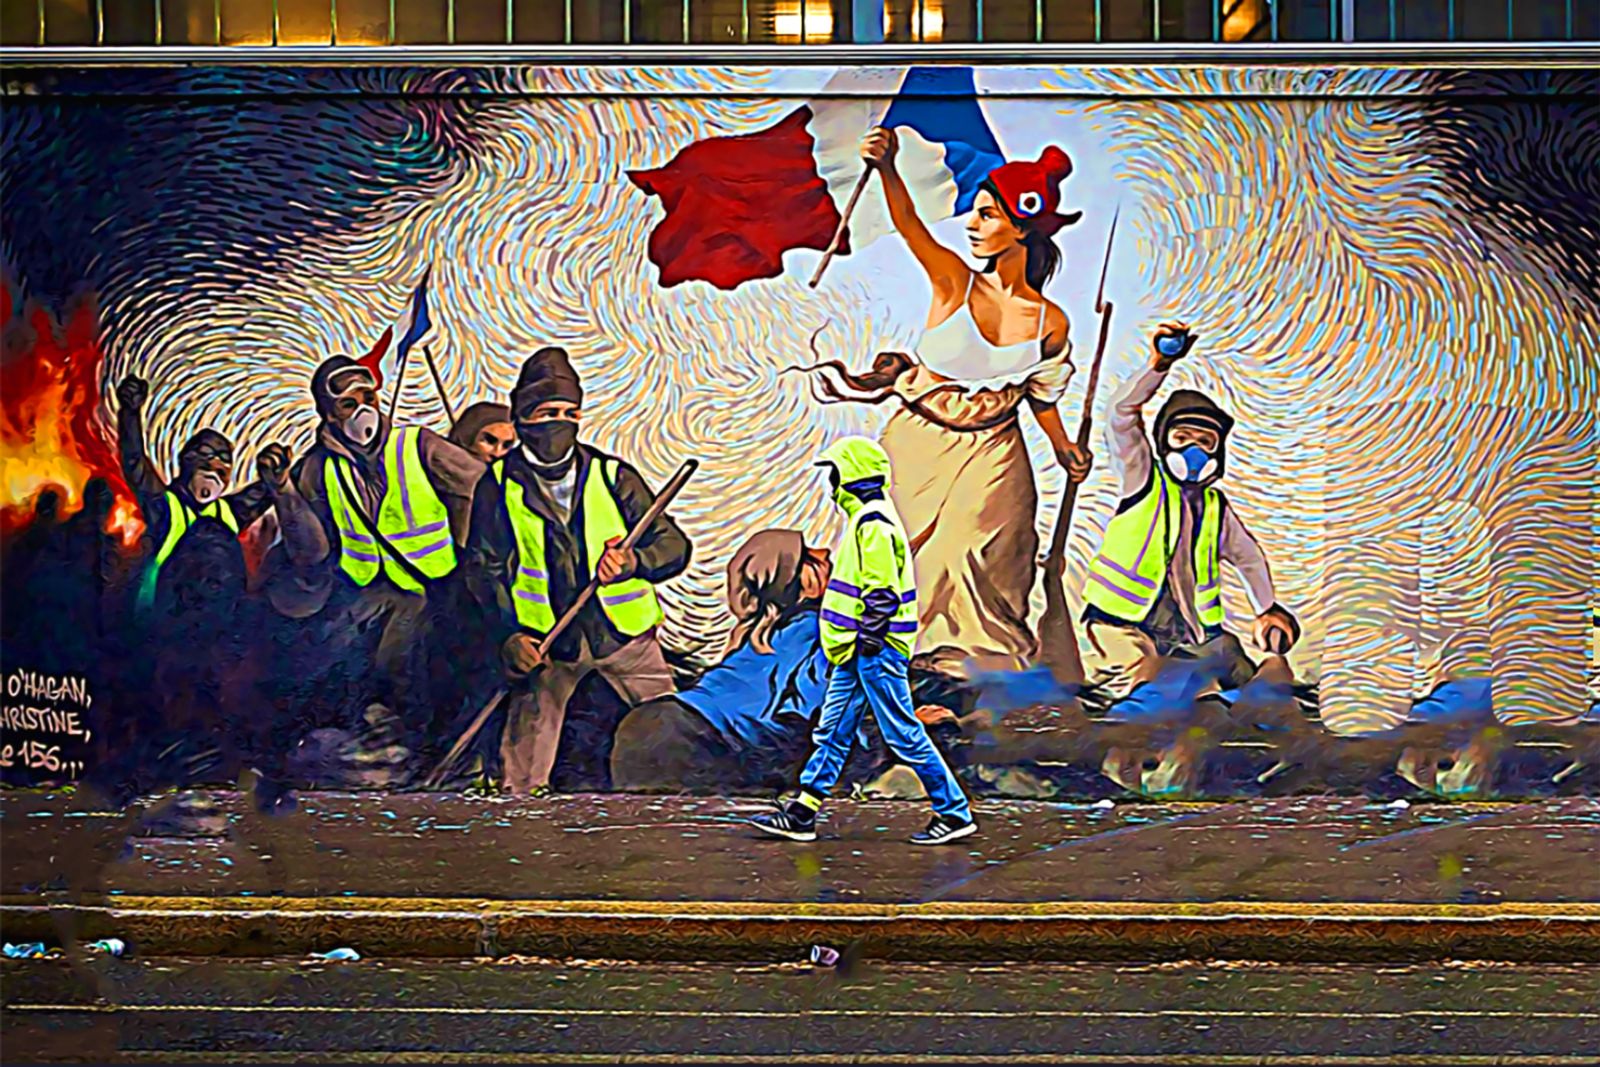 ما الذي تخبرنا به الثورة الفرنسية عن تاريخ الحقوق الاجتماعية؟